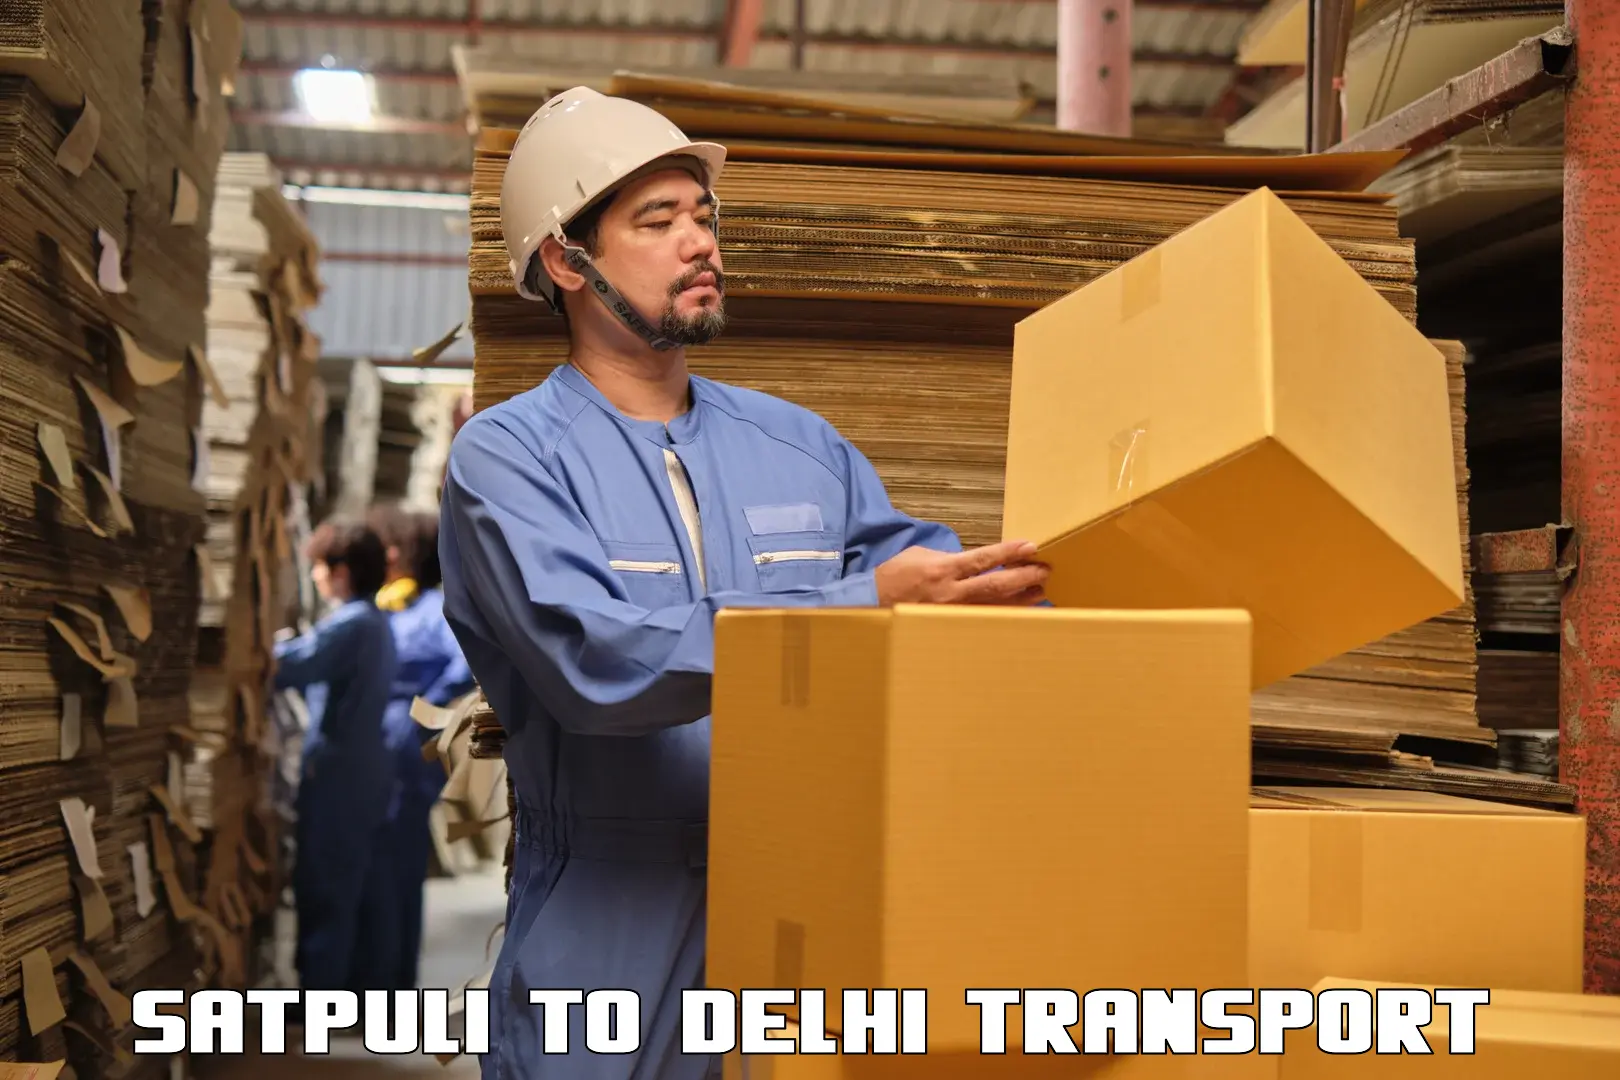 Truck transport companies in India Satpuli to IIT Delhi